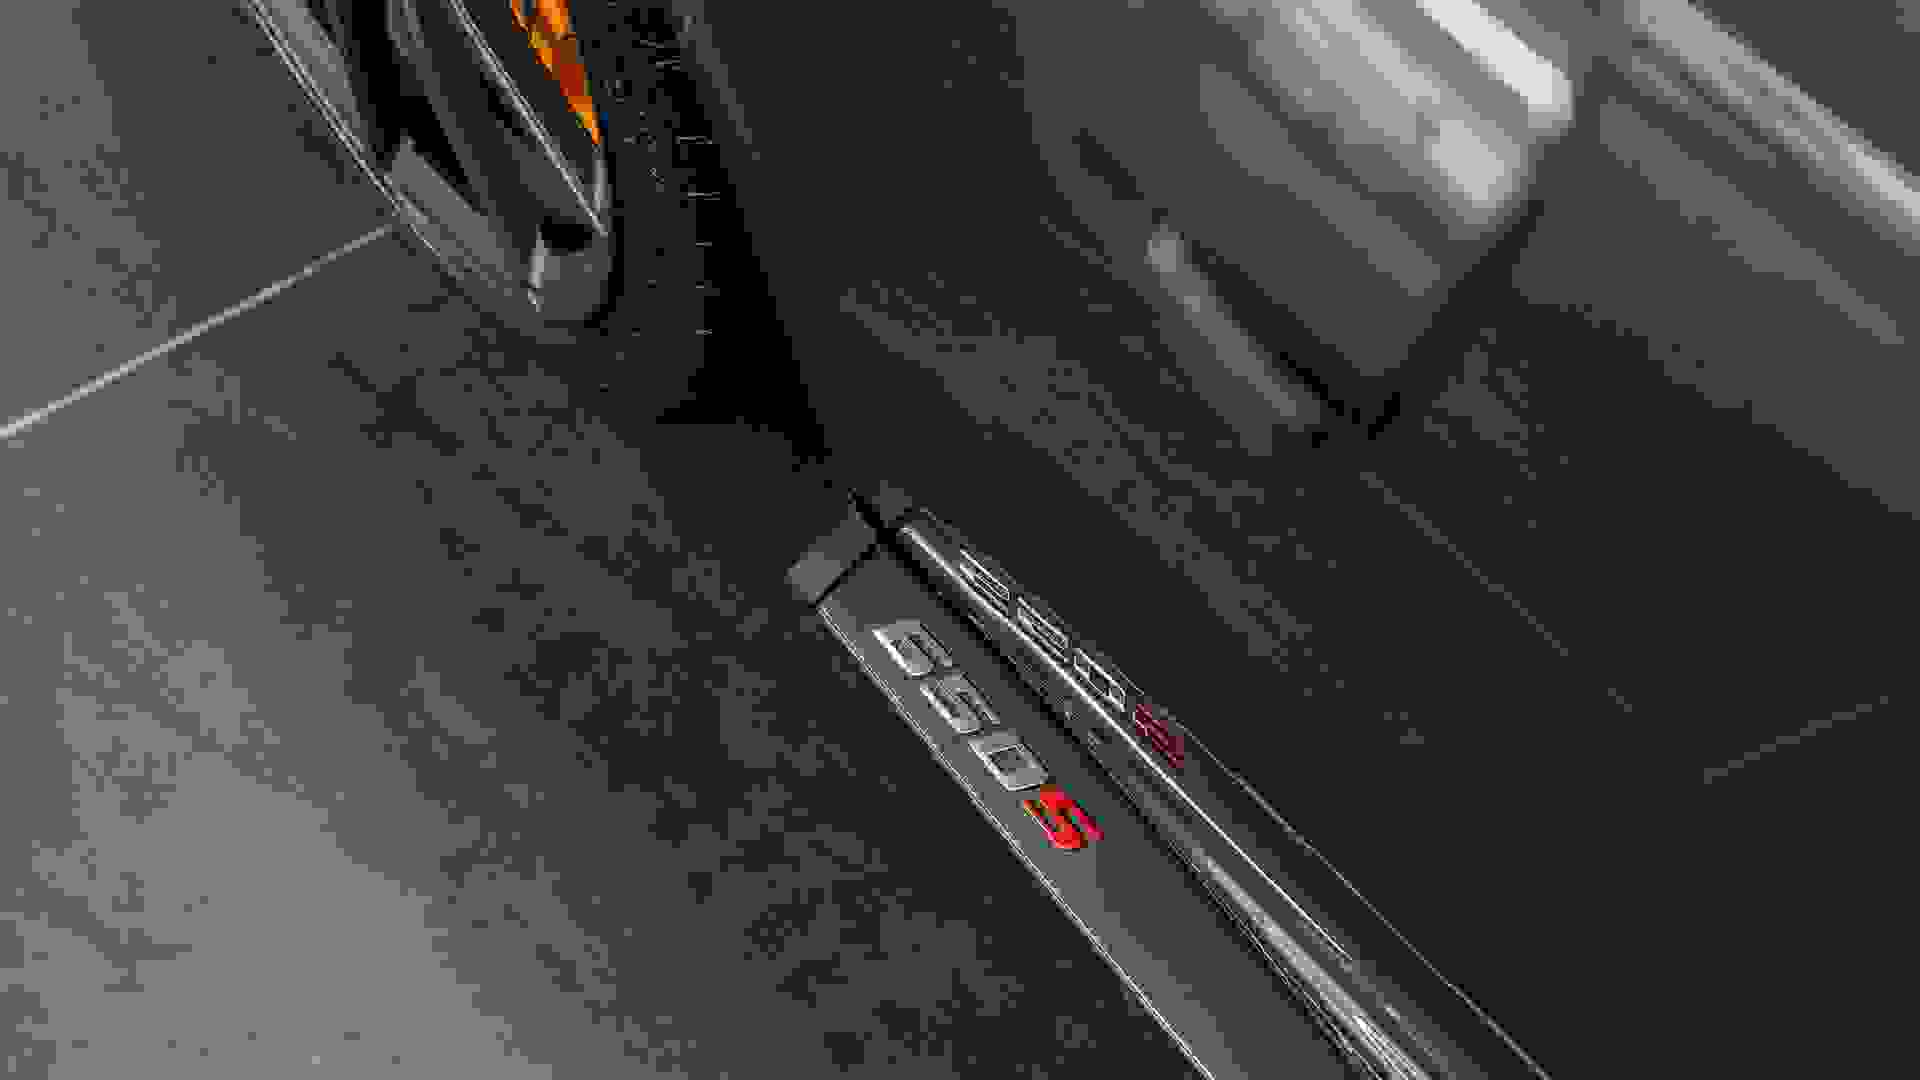 McLaren 650S Photo 9c83bc74-83a5-4b73-a61c-9b5abf6a38b0.jpg